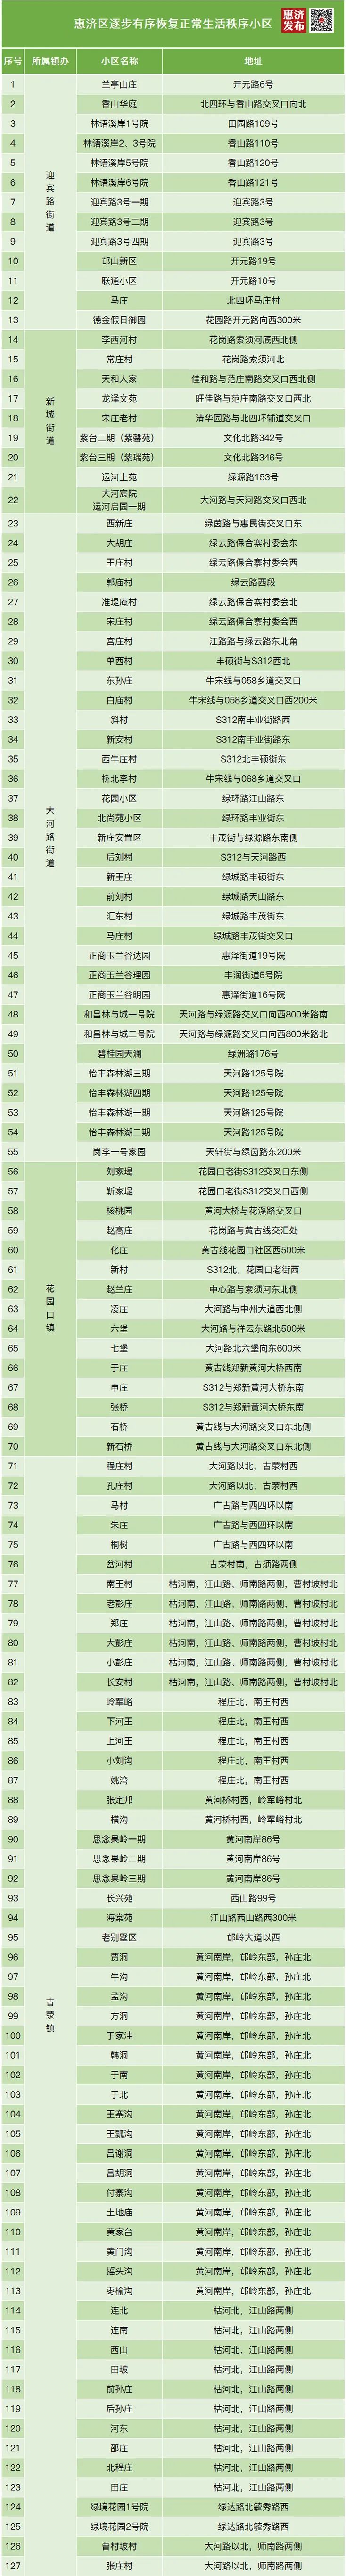 郑州惠济区127个居民小区逐步有序恢复正常生活秩序，名单公布